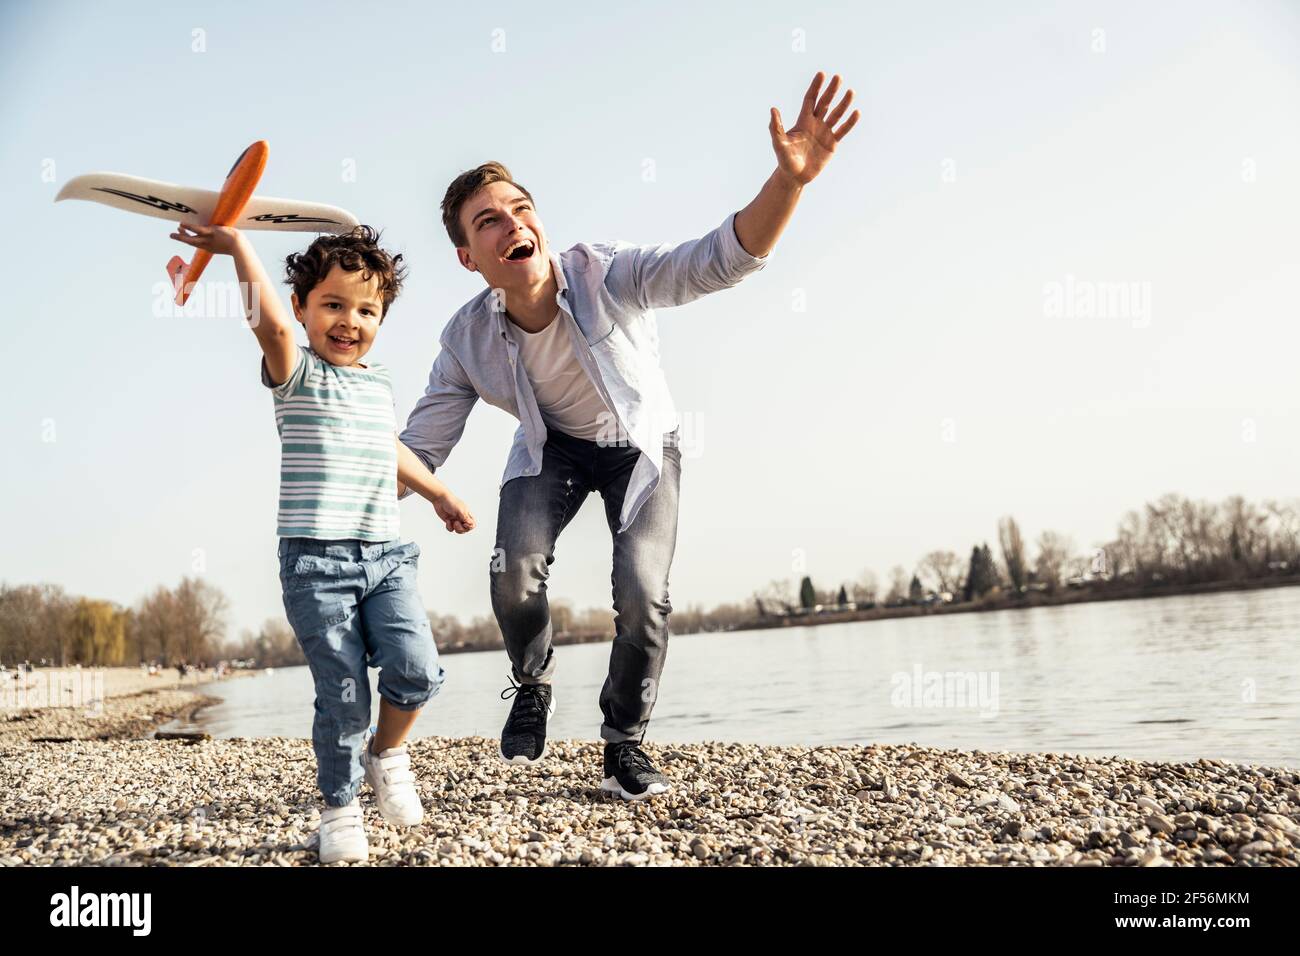 Verspielter Mann und Junge halten Flugzeugspielzeug, während sie vorbei laufen Seeufer an sonnigen Tagen Stockfoto